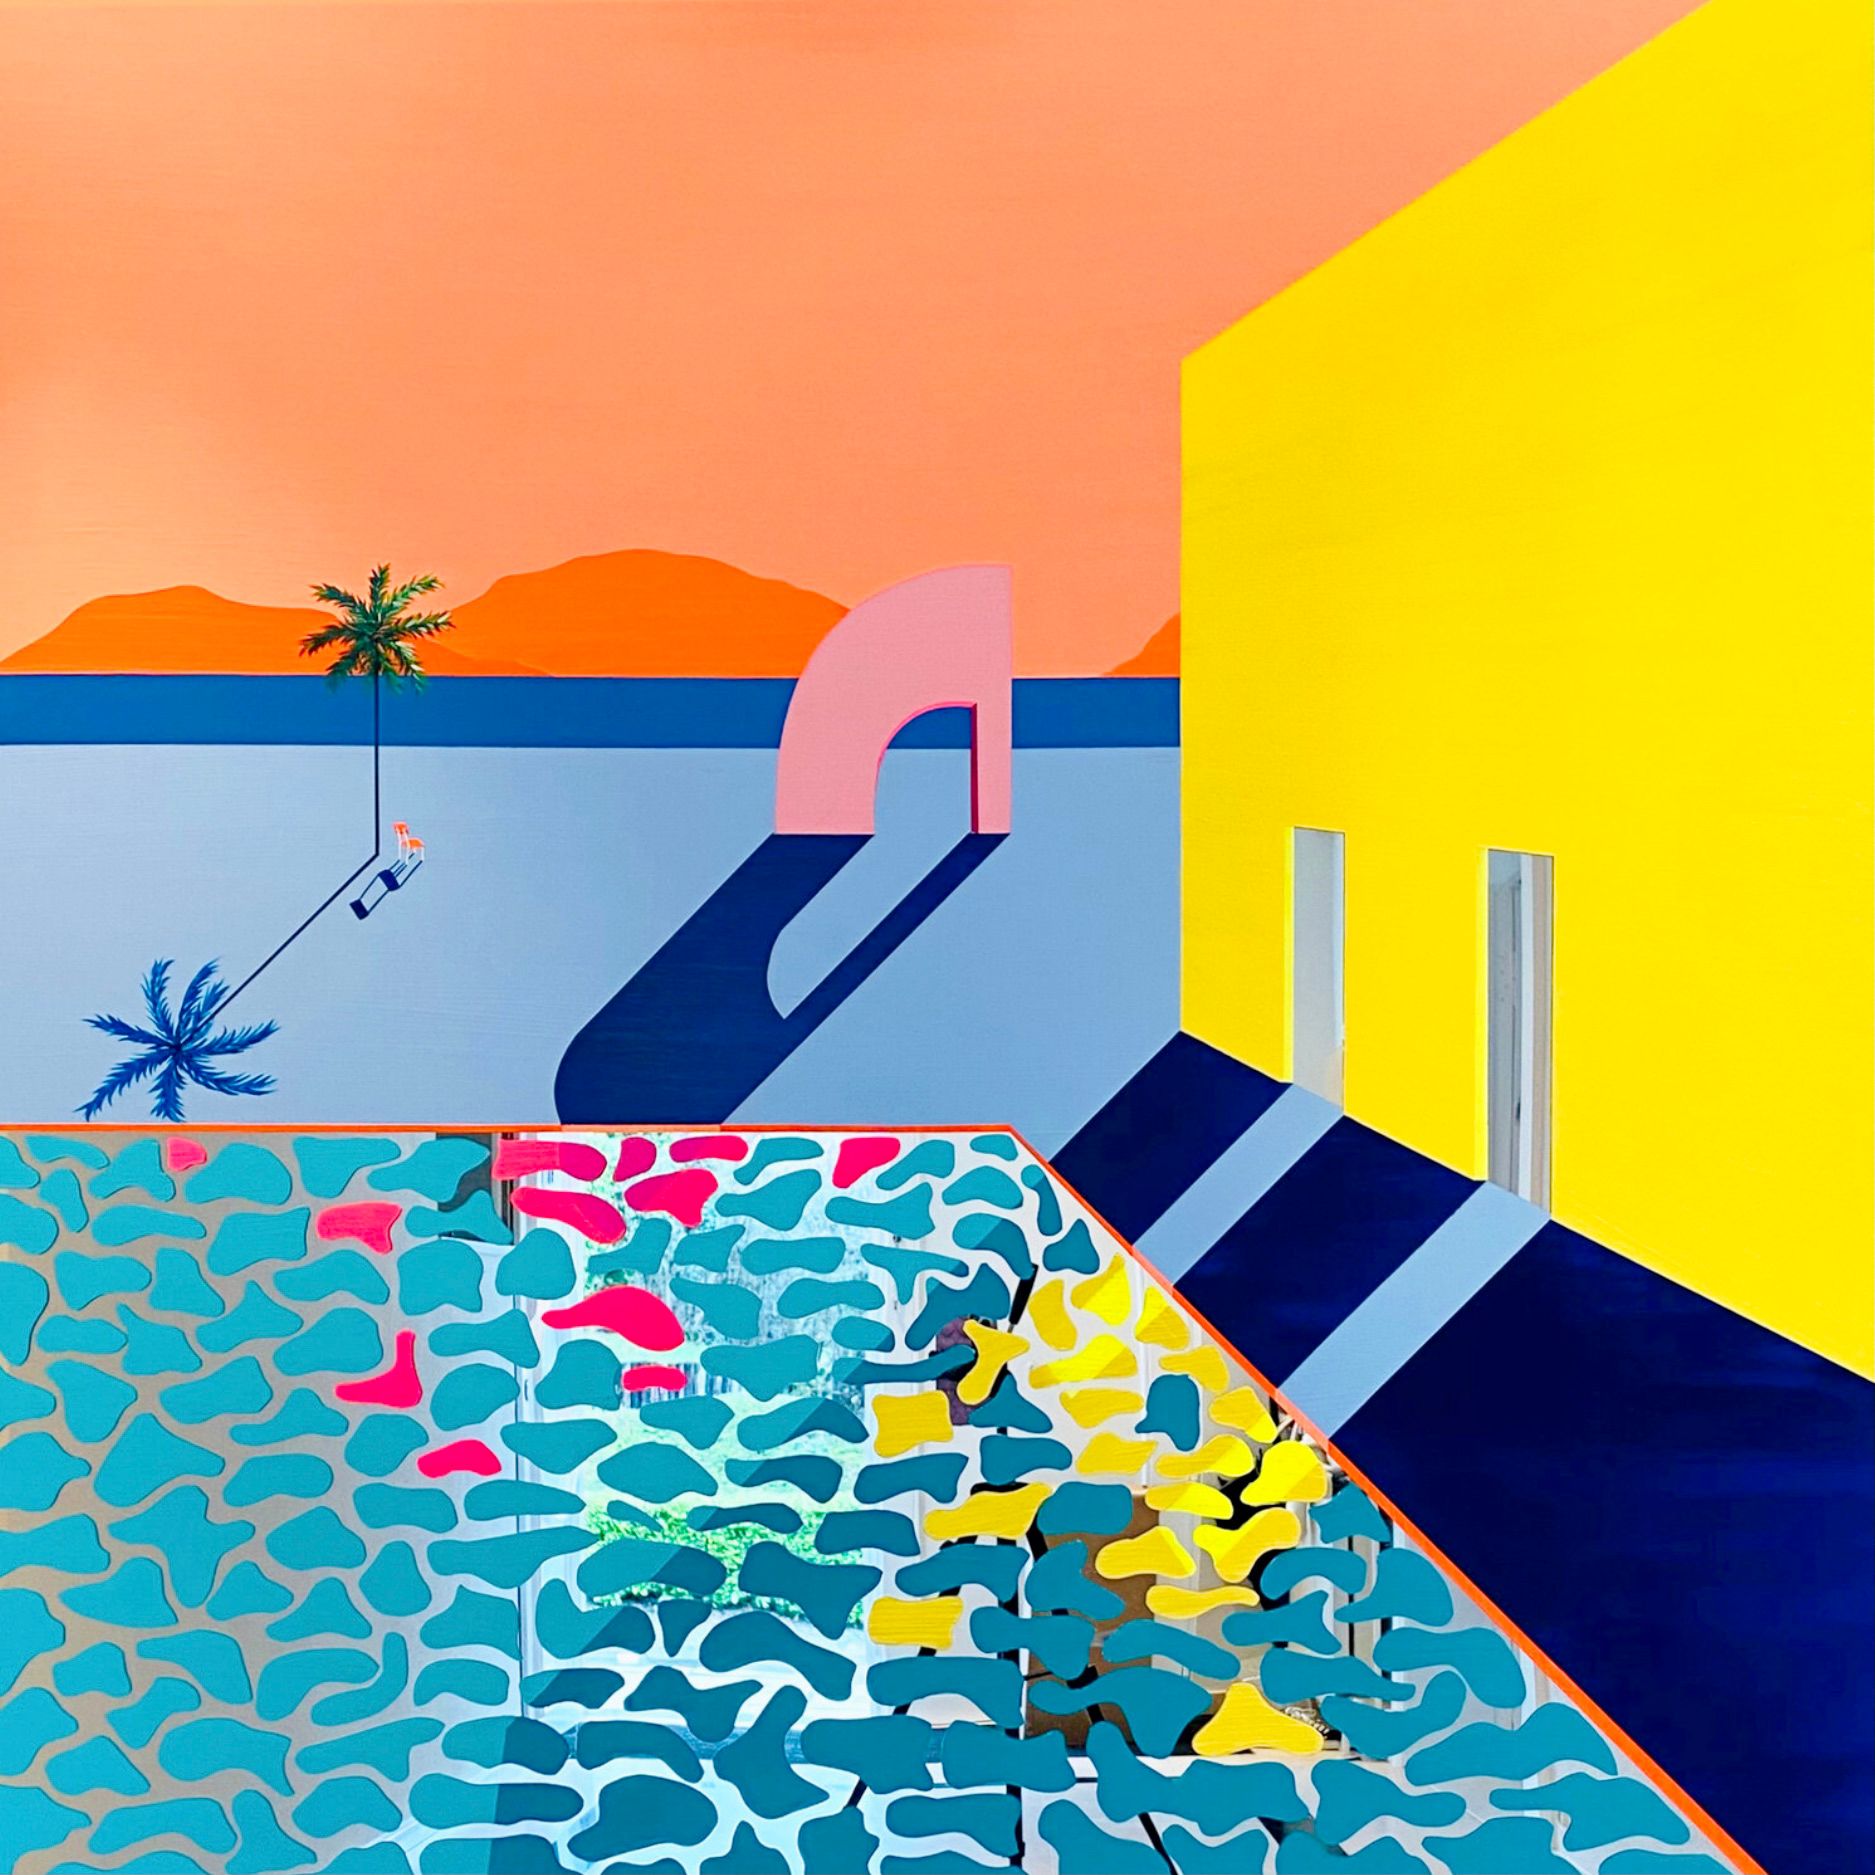 Isabelle Derecque, "Painting for the tacos delivery boy" Pittura colorata, dipinta su una misteriosa piscina colorata posta su uno specchio plexi in stile pop-up con colori allegri ed energici. Visualizzato attraverso geometrie, prospettive, contrasti e riflessi.